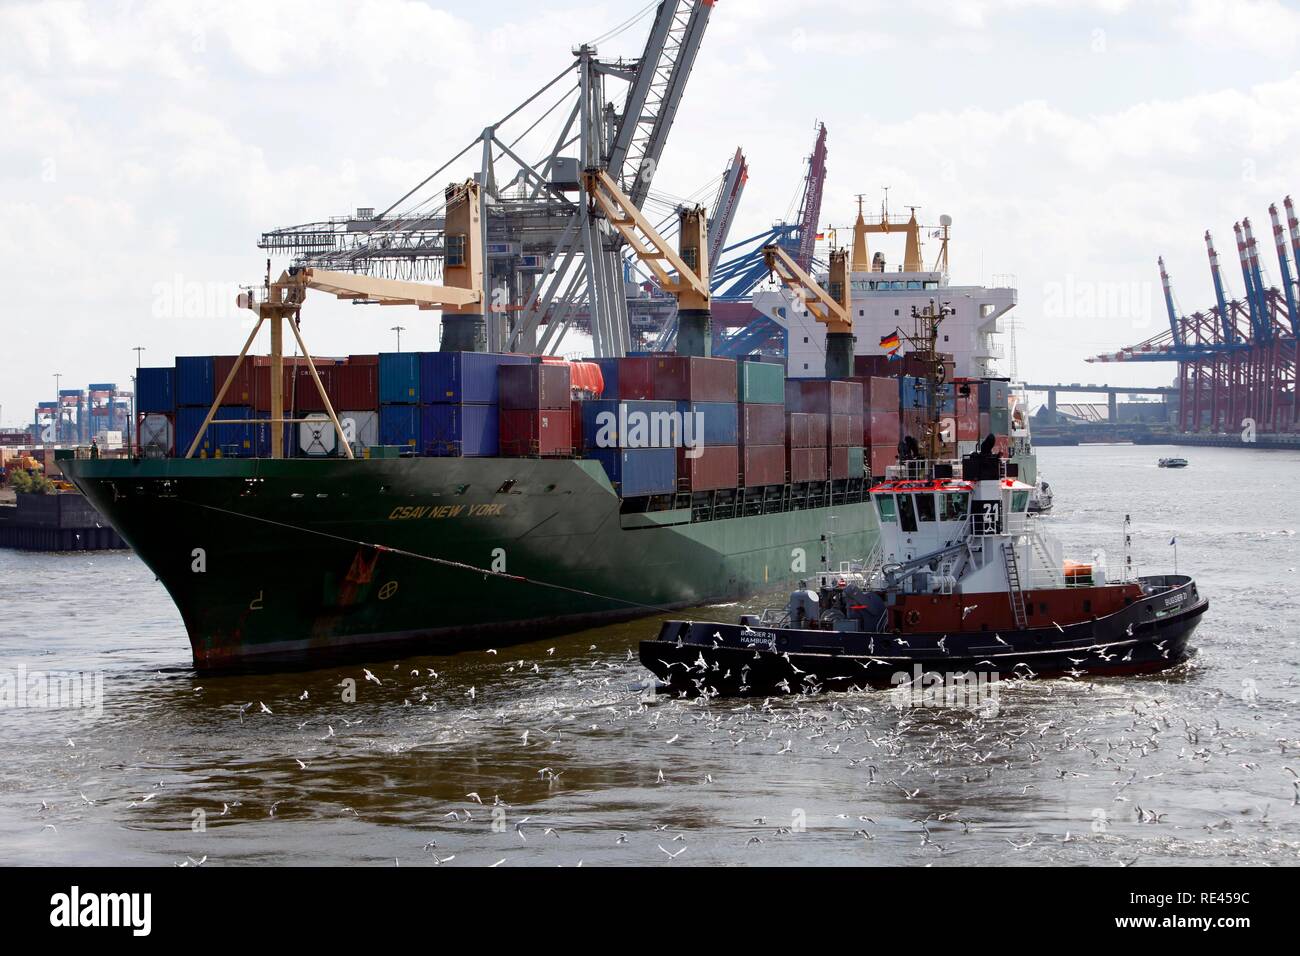 Containerschiffe im Hamburger Hafen Stockfoto